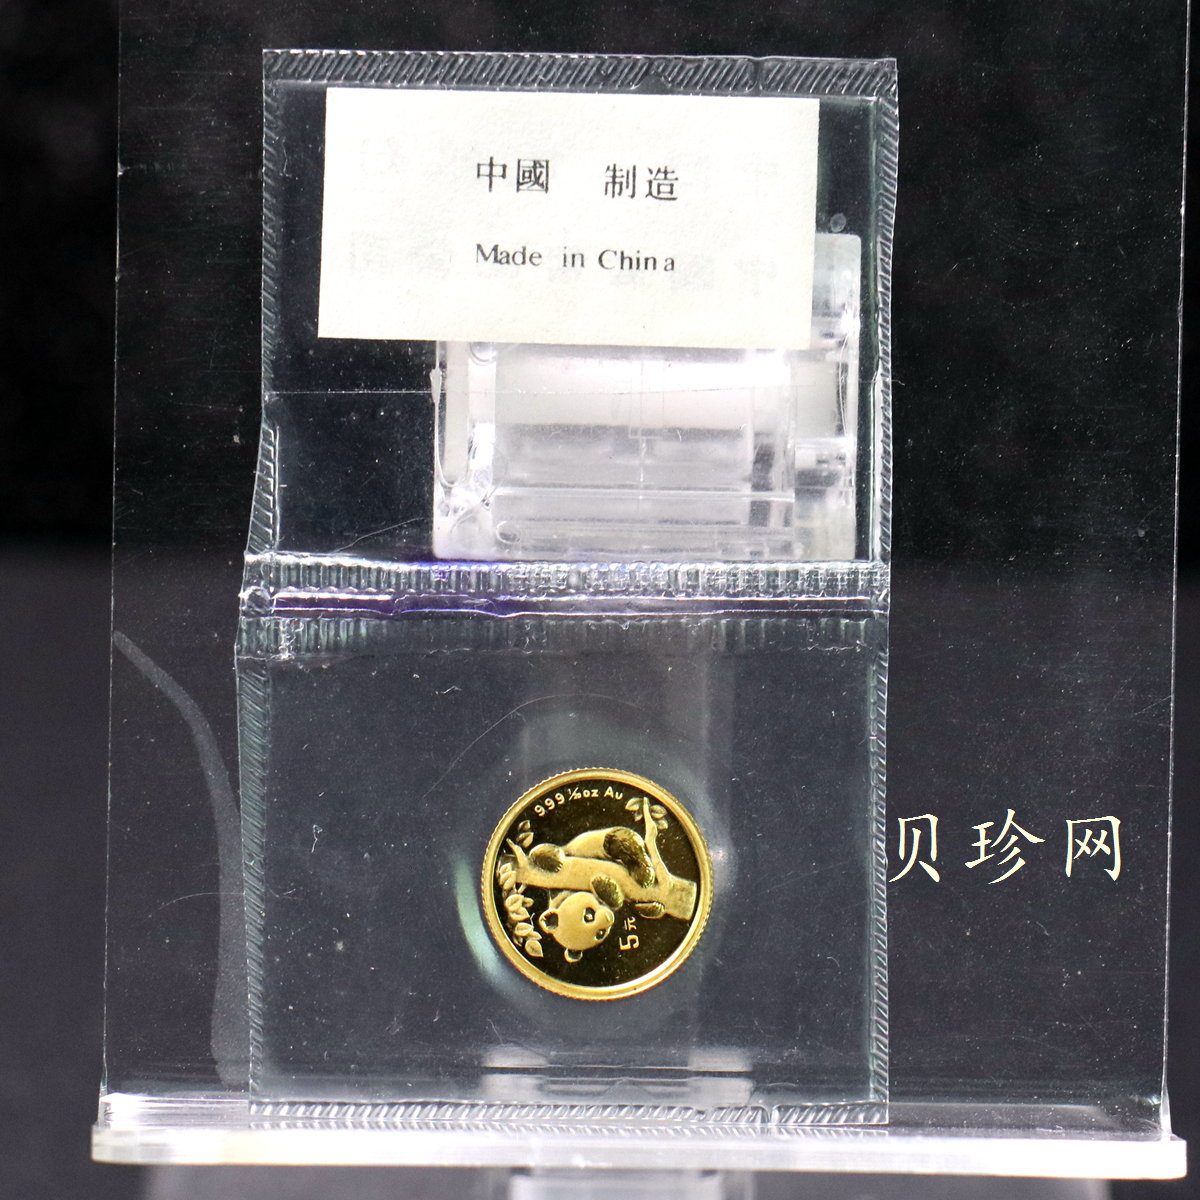 【960211】1996年熊猫1/20盎司普制金币